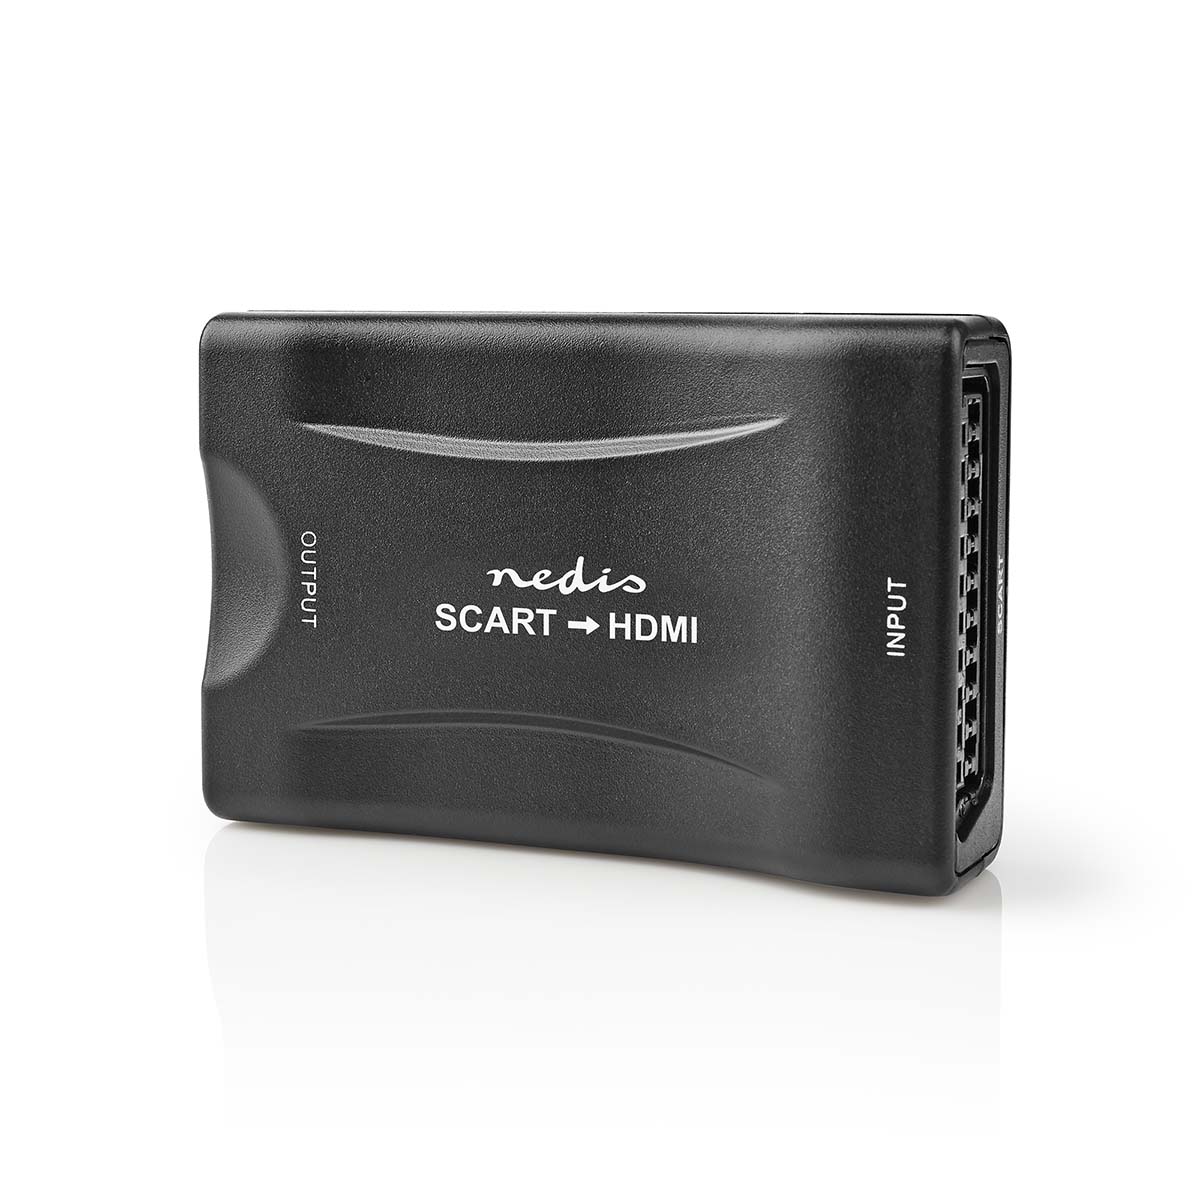 NEDIS HDMI™ Převodník | SCART Zásuvka | Vstup HDMI ™ | 1cestný | 1080p | 1.2 Gbps | ABS | Černá